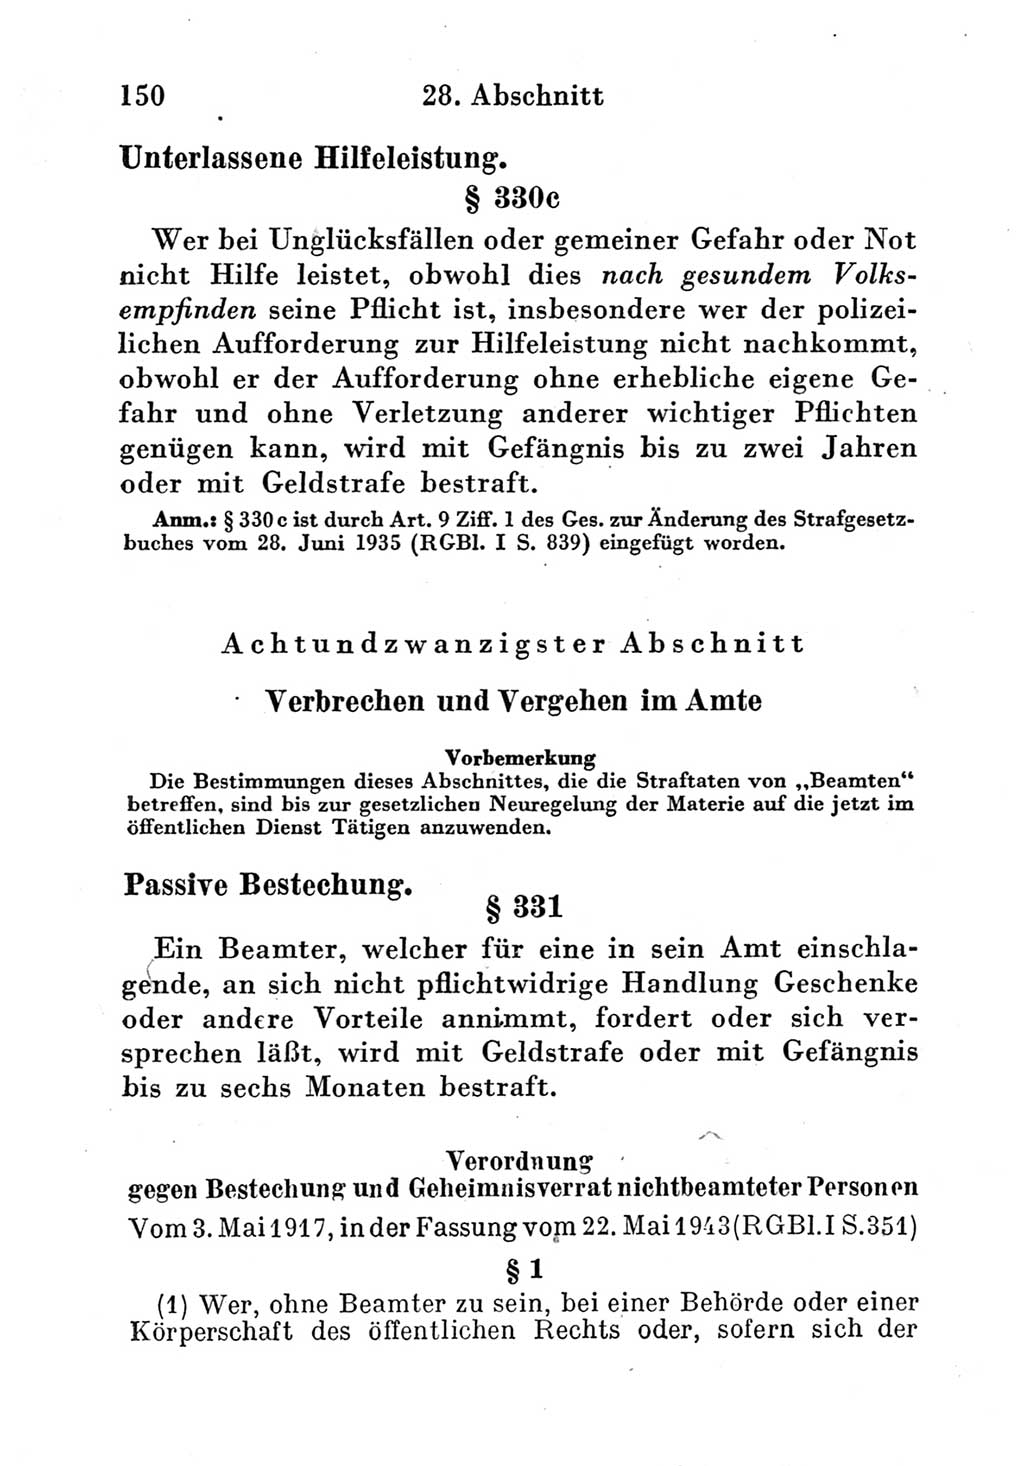 Strafgesetzbuch (StGB) und andere Strafgesetze [Deutsche Demokratische Republik (DDR)] 1951, Seite 150 (StGB Strafges. DDR 1951, S. 150)